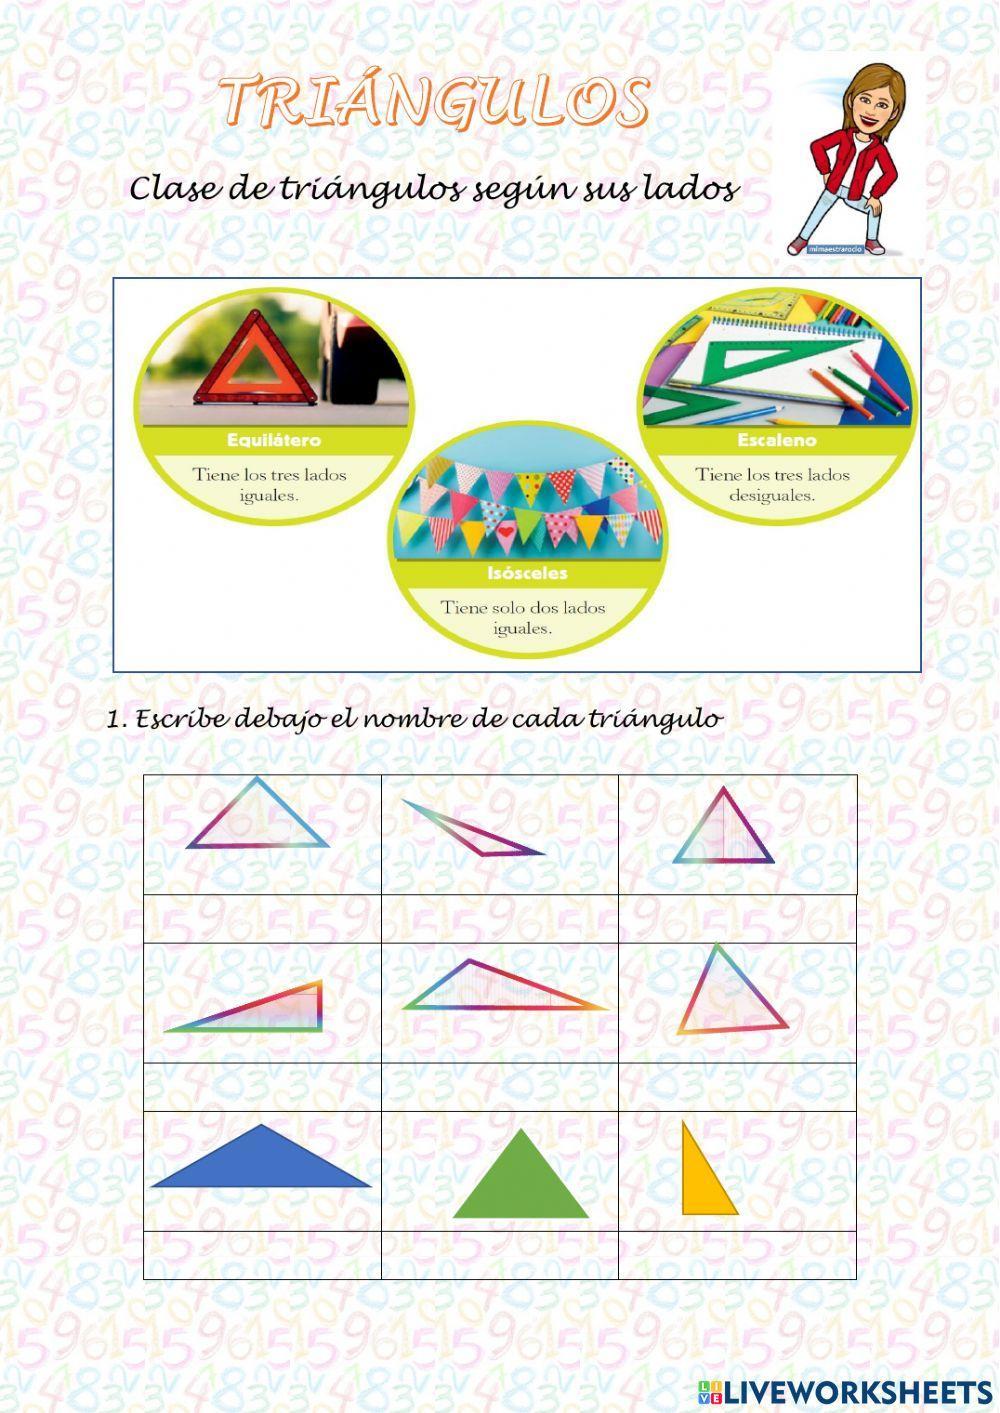 Clase de triángulos